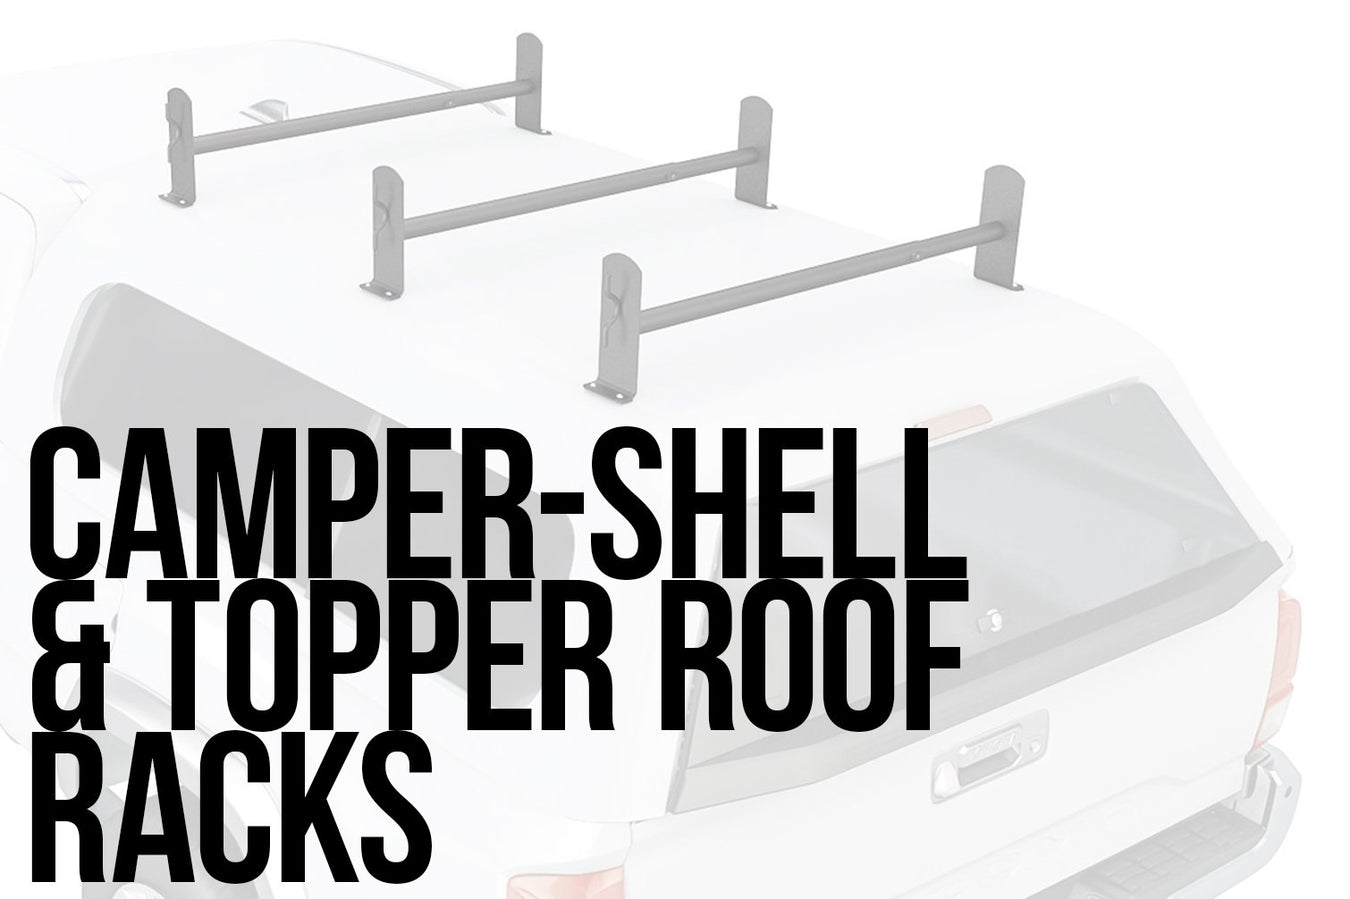 Camper-Shell & Topper Roof Racks